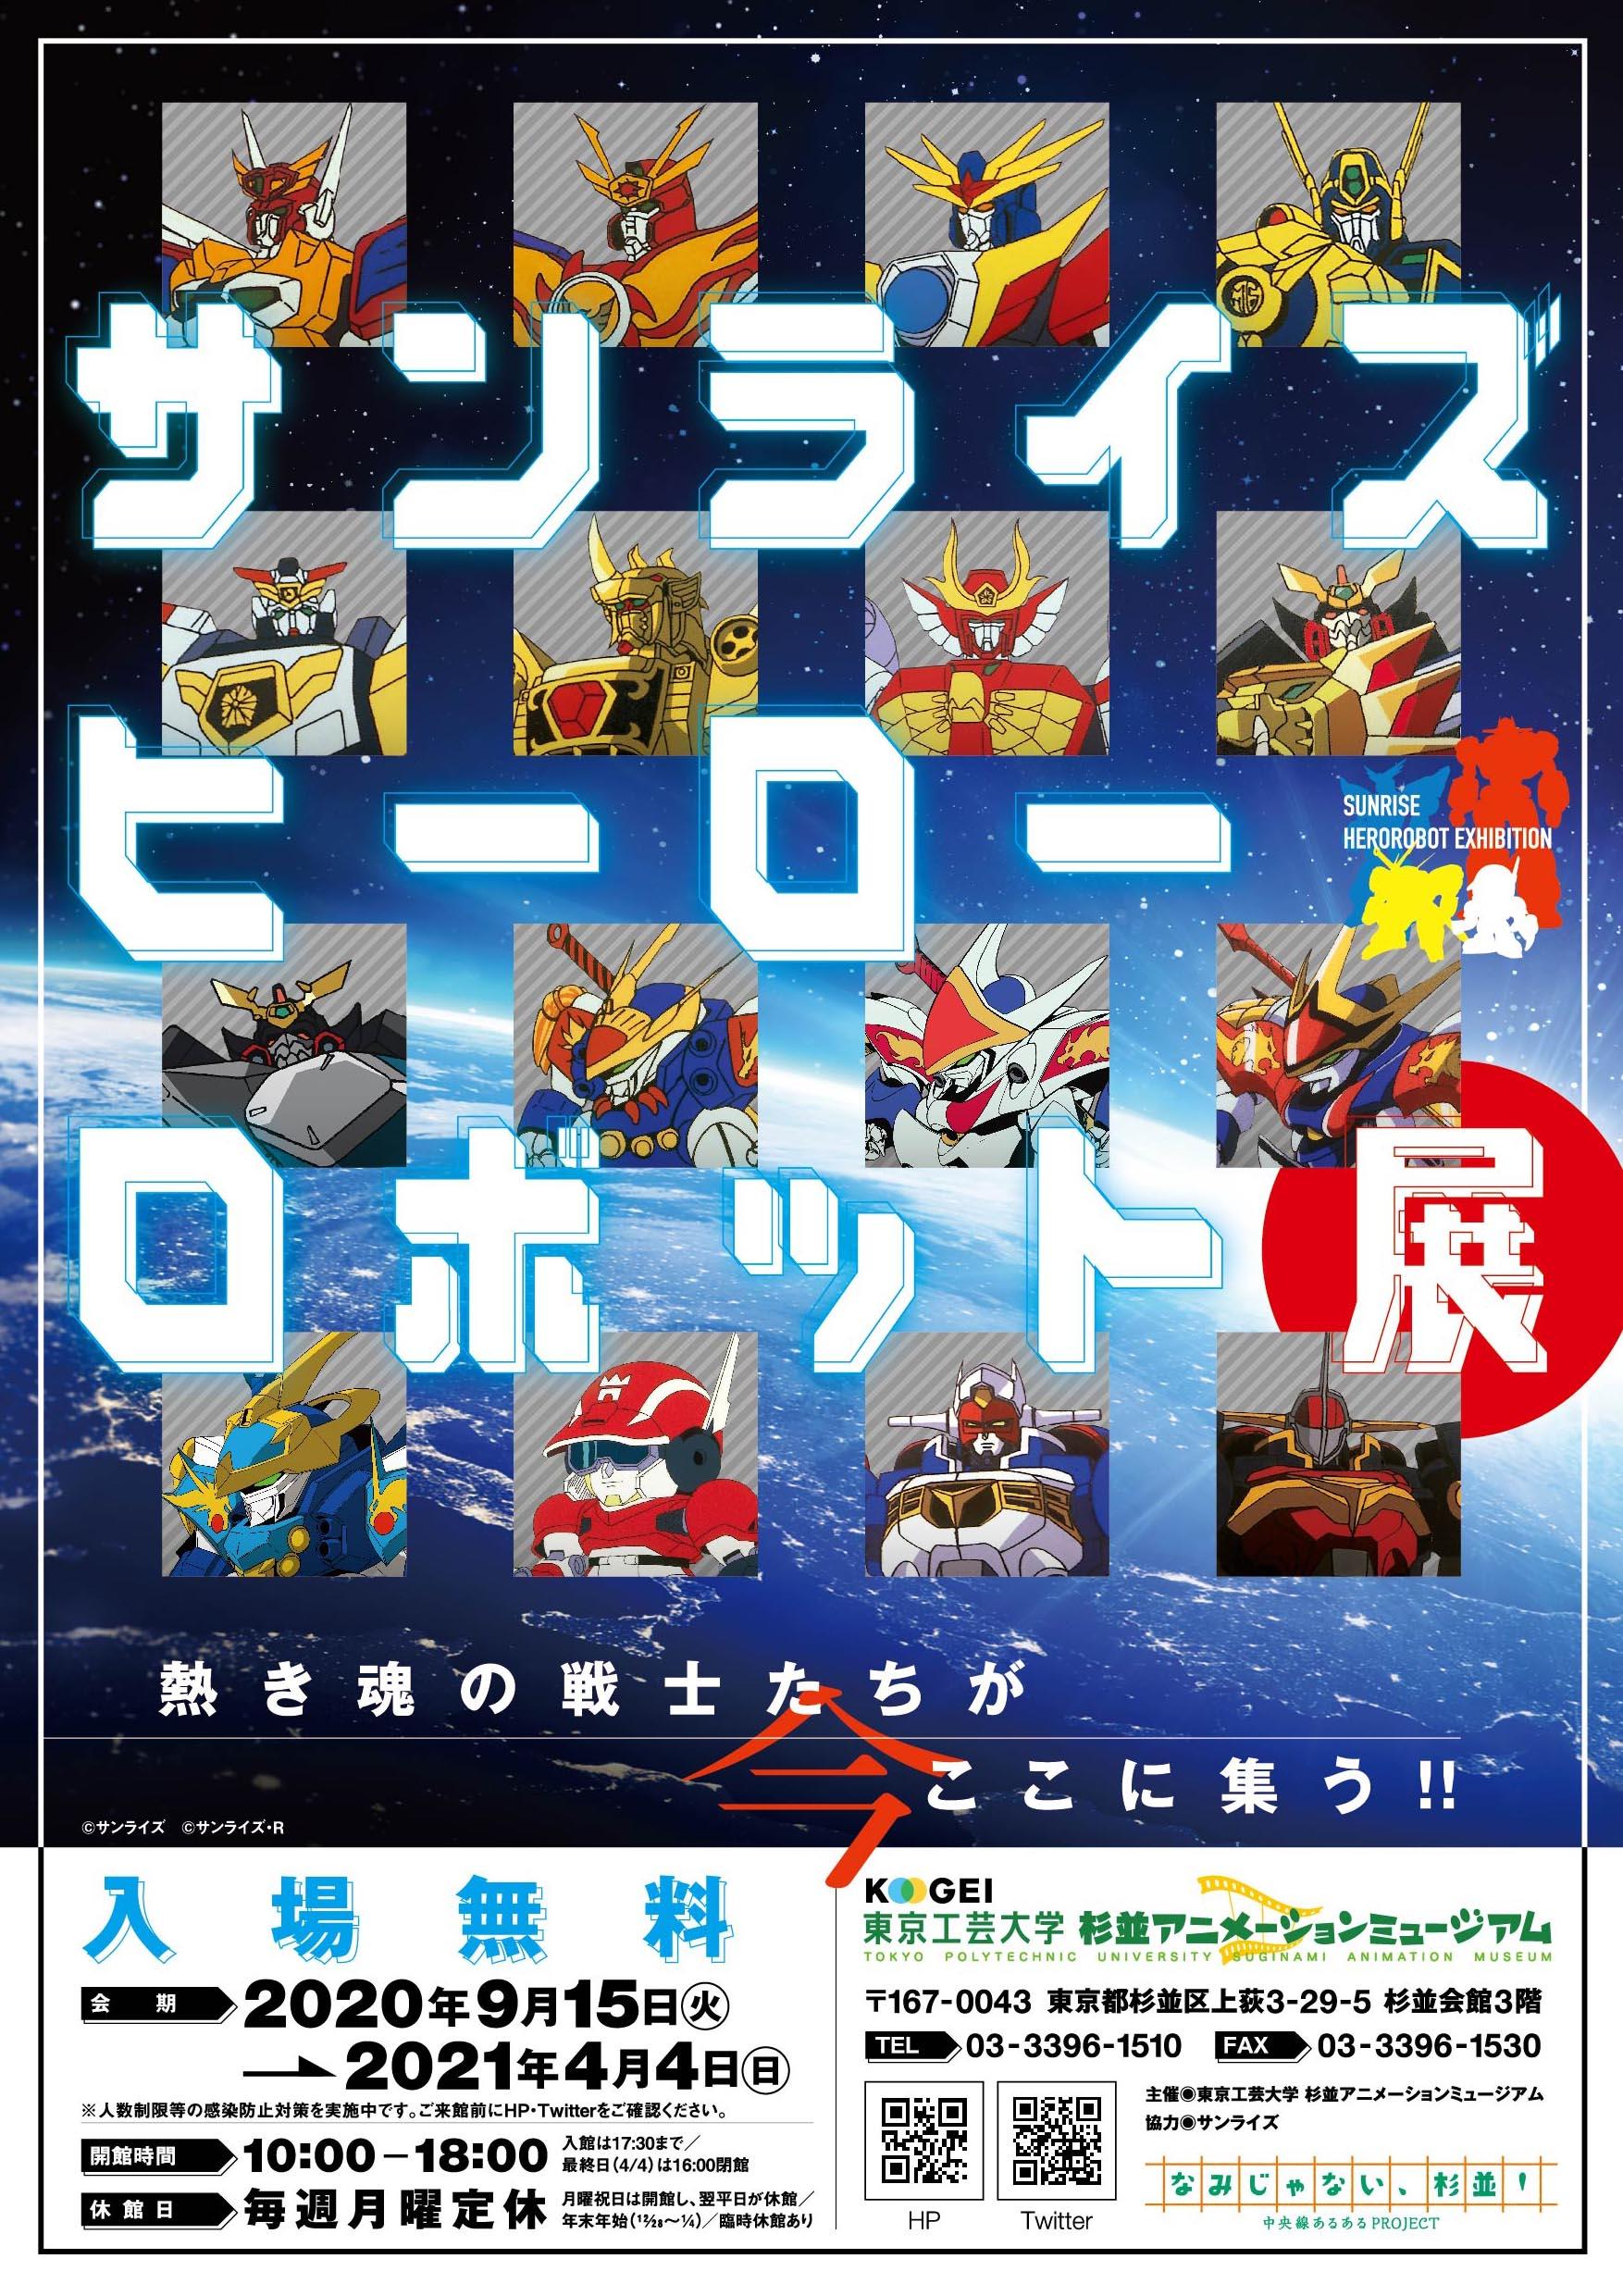 東京工芸大学 杉並アニメーションミュージアム企画展 -- 「サンライズ ヒーローロボット展」を開催